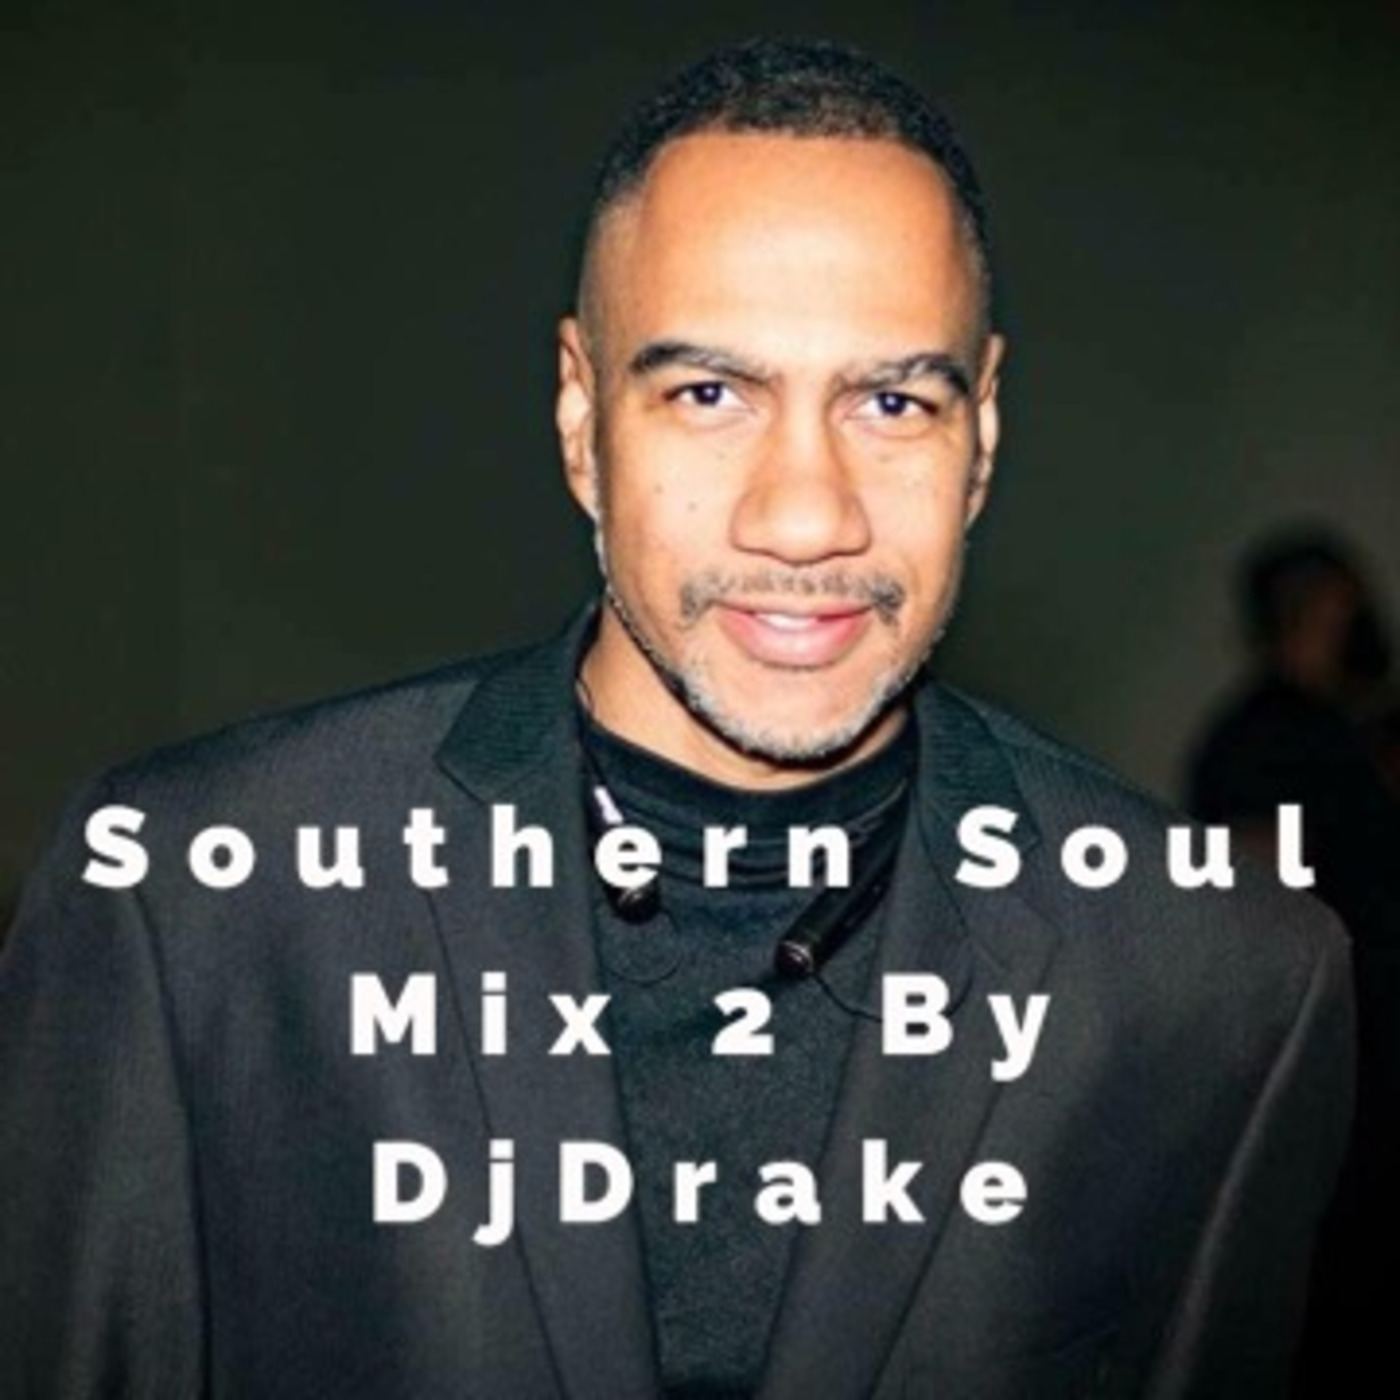 Southern Soul Mix 2 by DjDrake